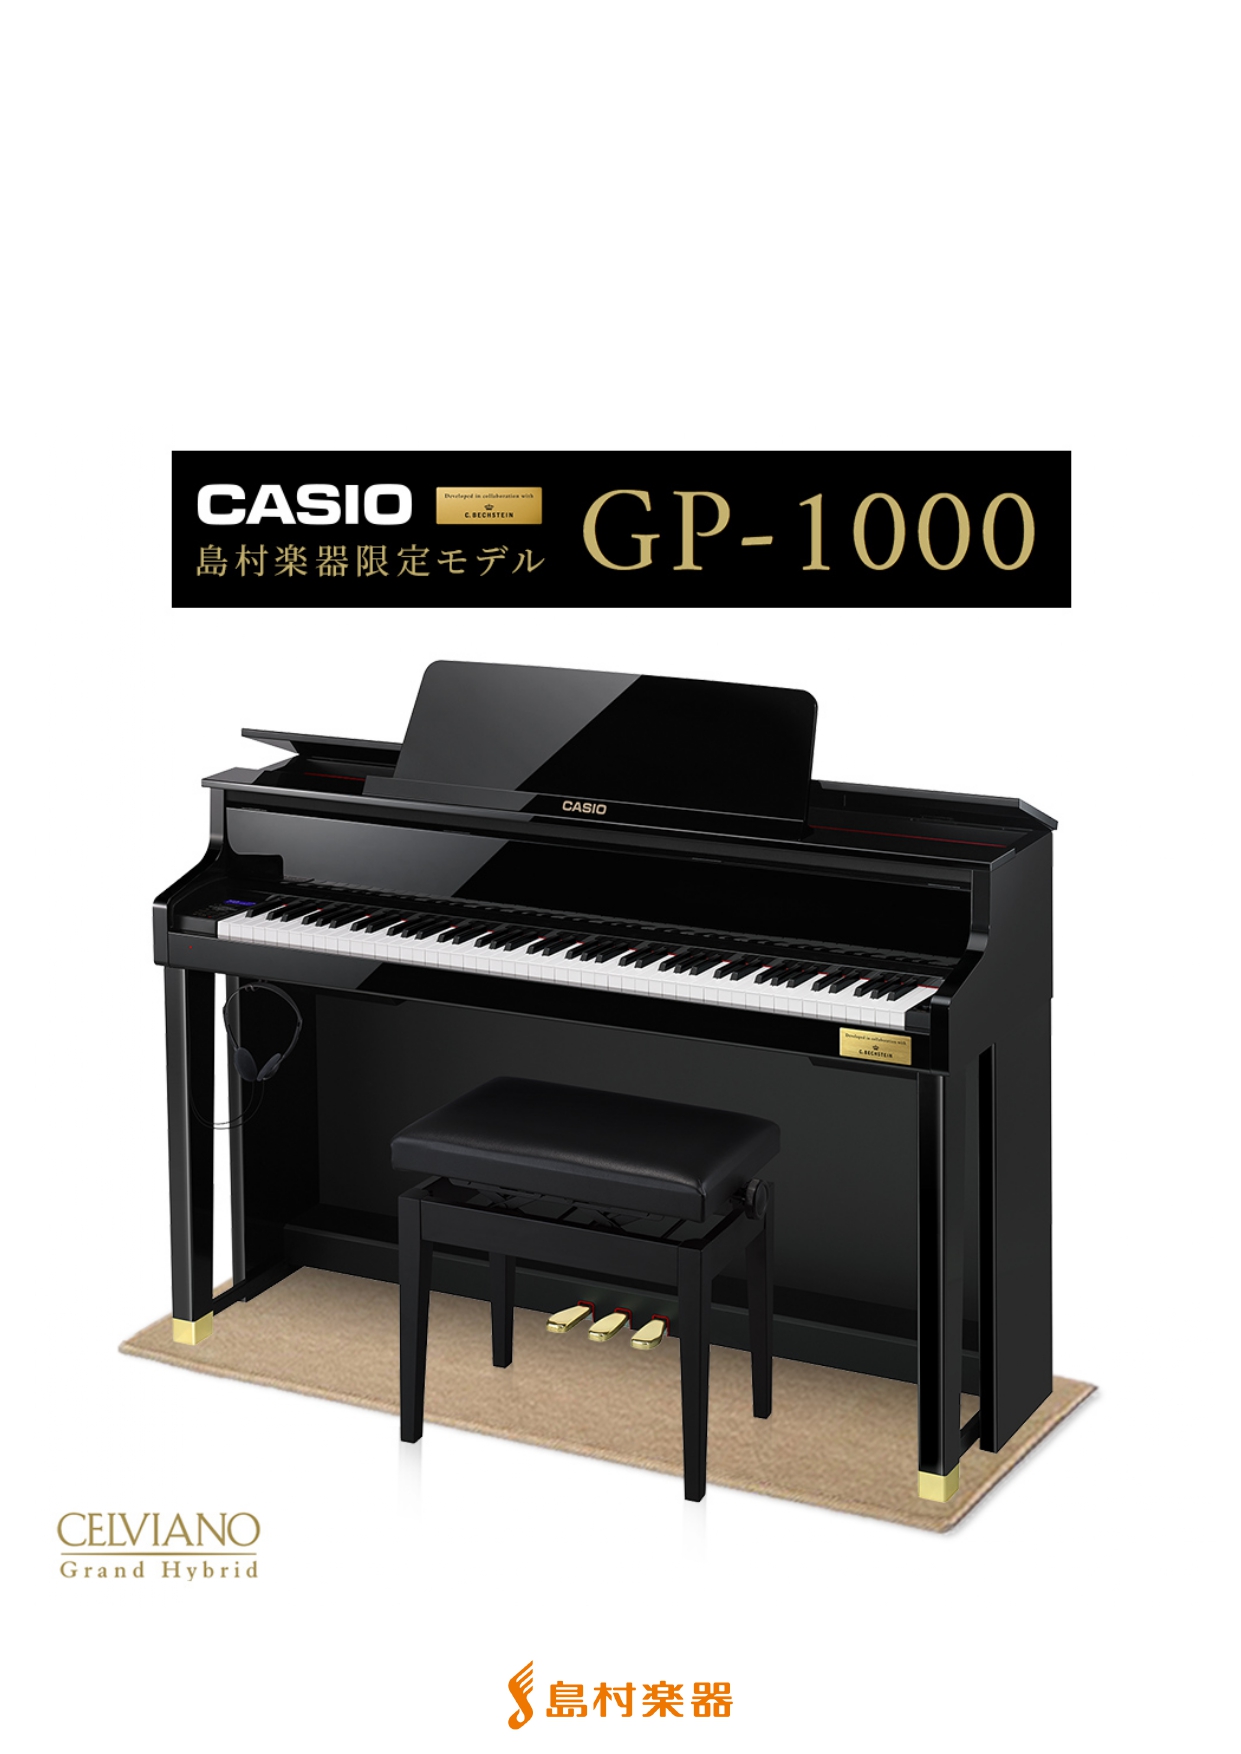 グランドピアノに徹底的にこだわった至極のクオリティ ピアノ作りの伝統を徹底的に研究、そしてカシオの革新的なデジタル技術を投入した、カシオセルヴィアーノグランドハイブリッドシリーズ。世界有数の歴史あるピアノメーカーであるC.ベヒシュタイン社と共同開発した音や鍵盤を搭載し、2015年の発売以降国内外のピ […]